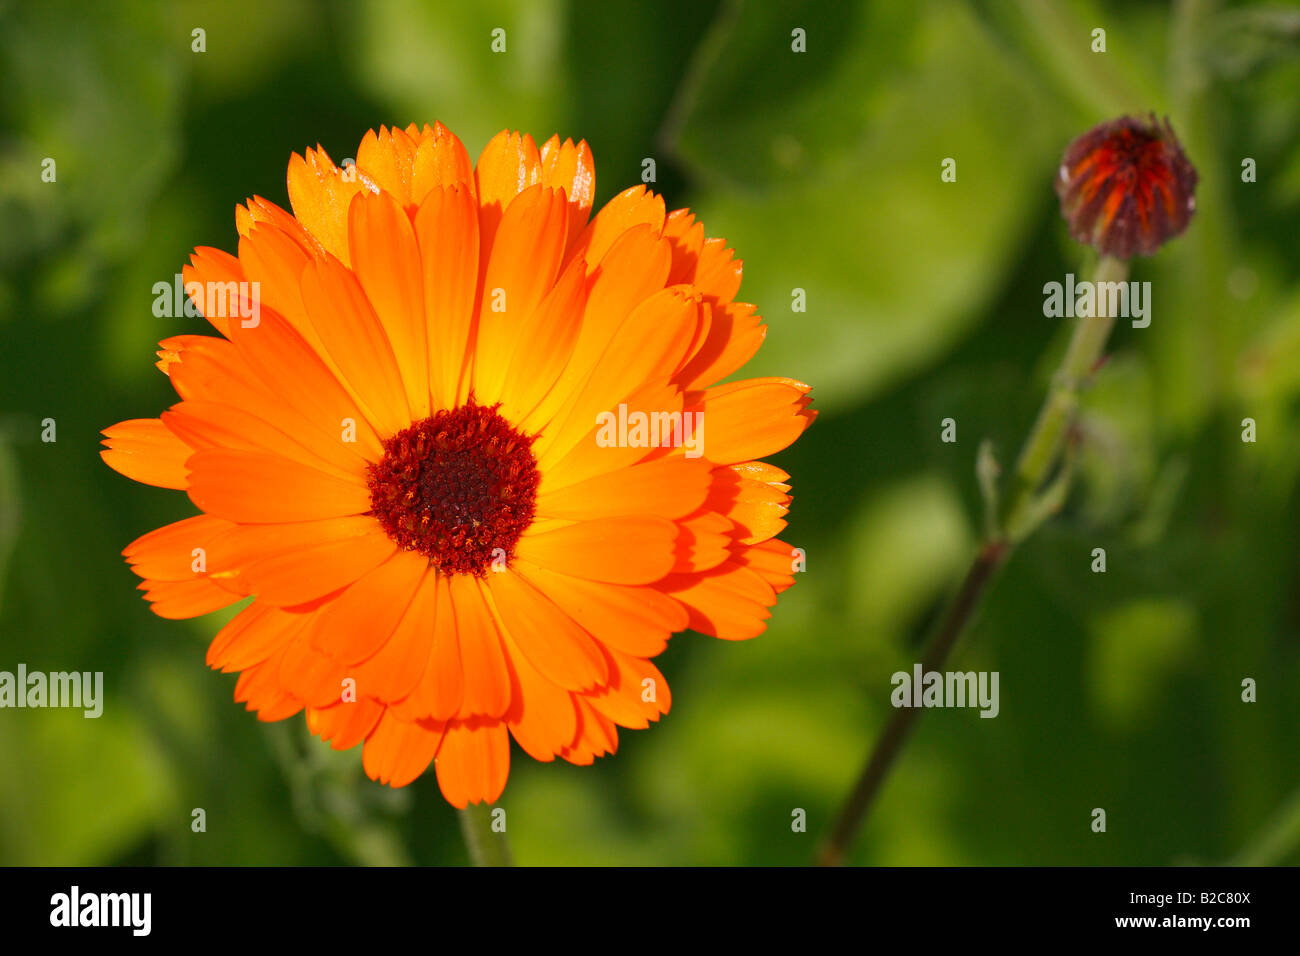 Souci officinal, French Marigold (Calendula officinalis), de plantes médicinales, de fleurs Banque D'Images